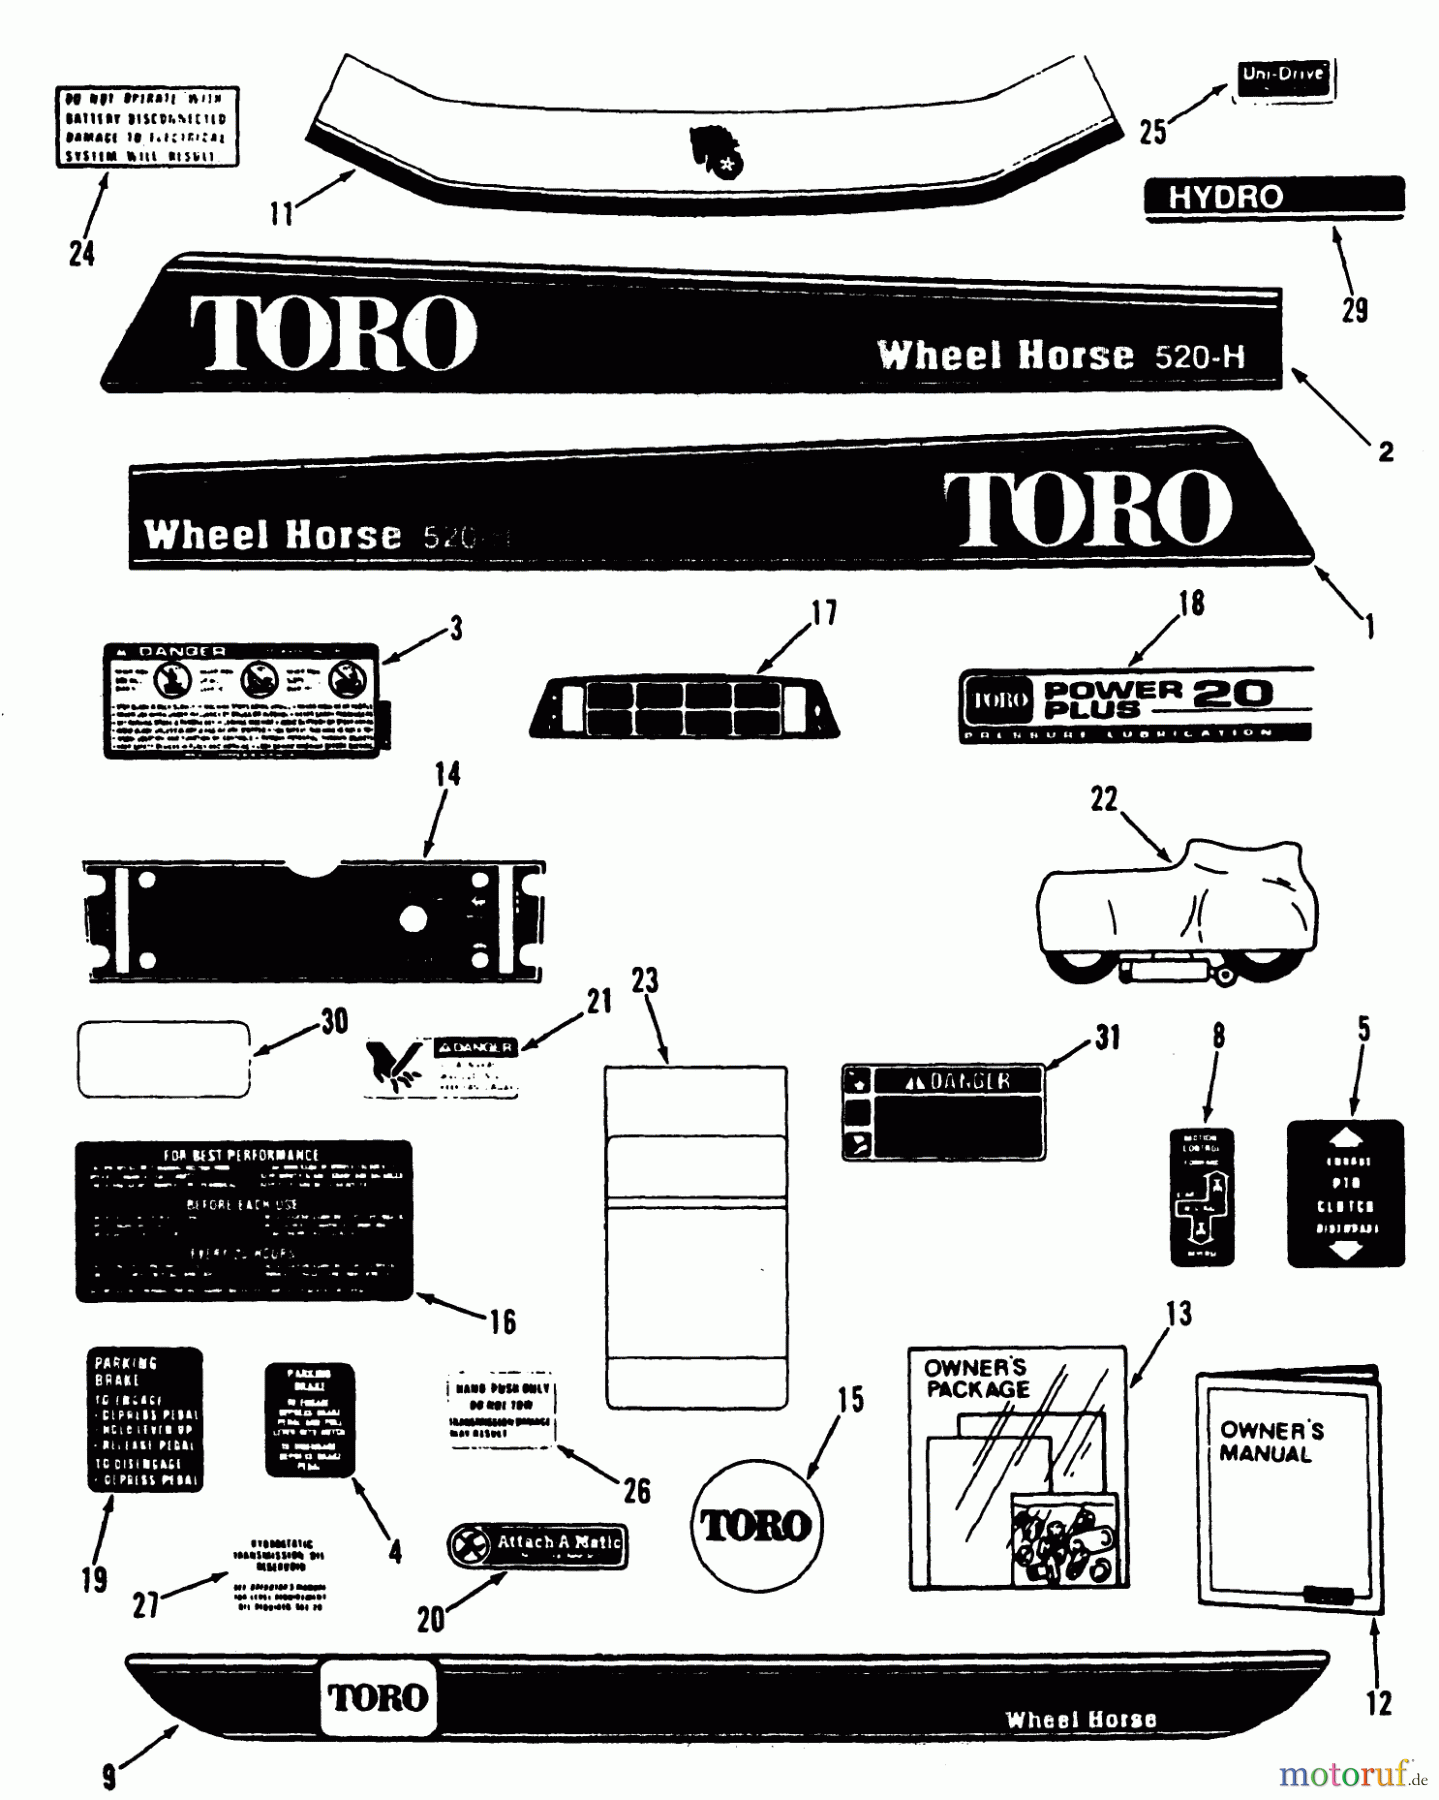  Toro Neu Mowers, Lawn & Garden Tractor Seite 1 41-20OE03 (520-H) - Toro 520-H Garden Tractor, 1992 (2000001-2999999) DECALS